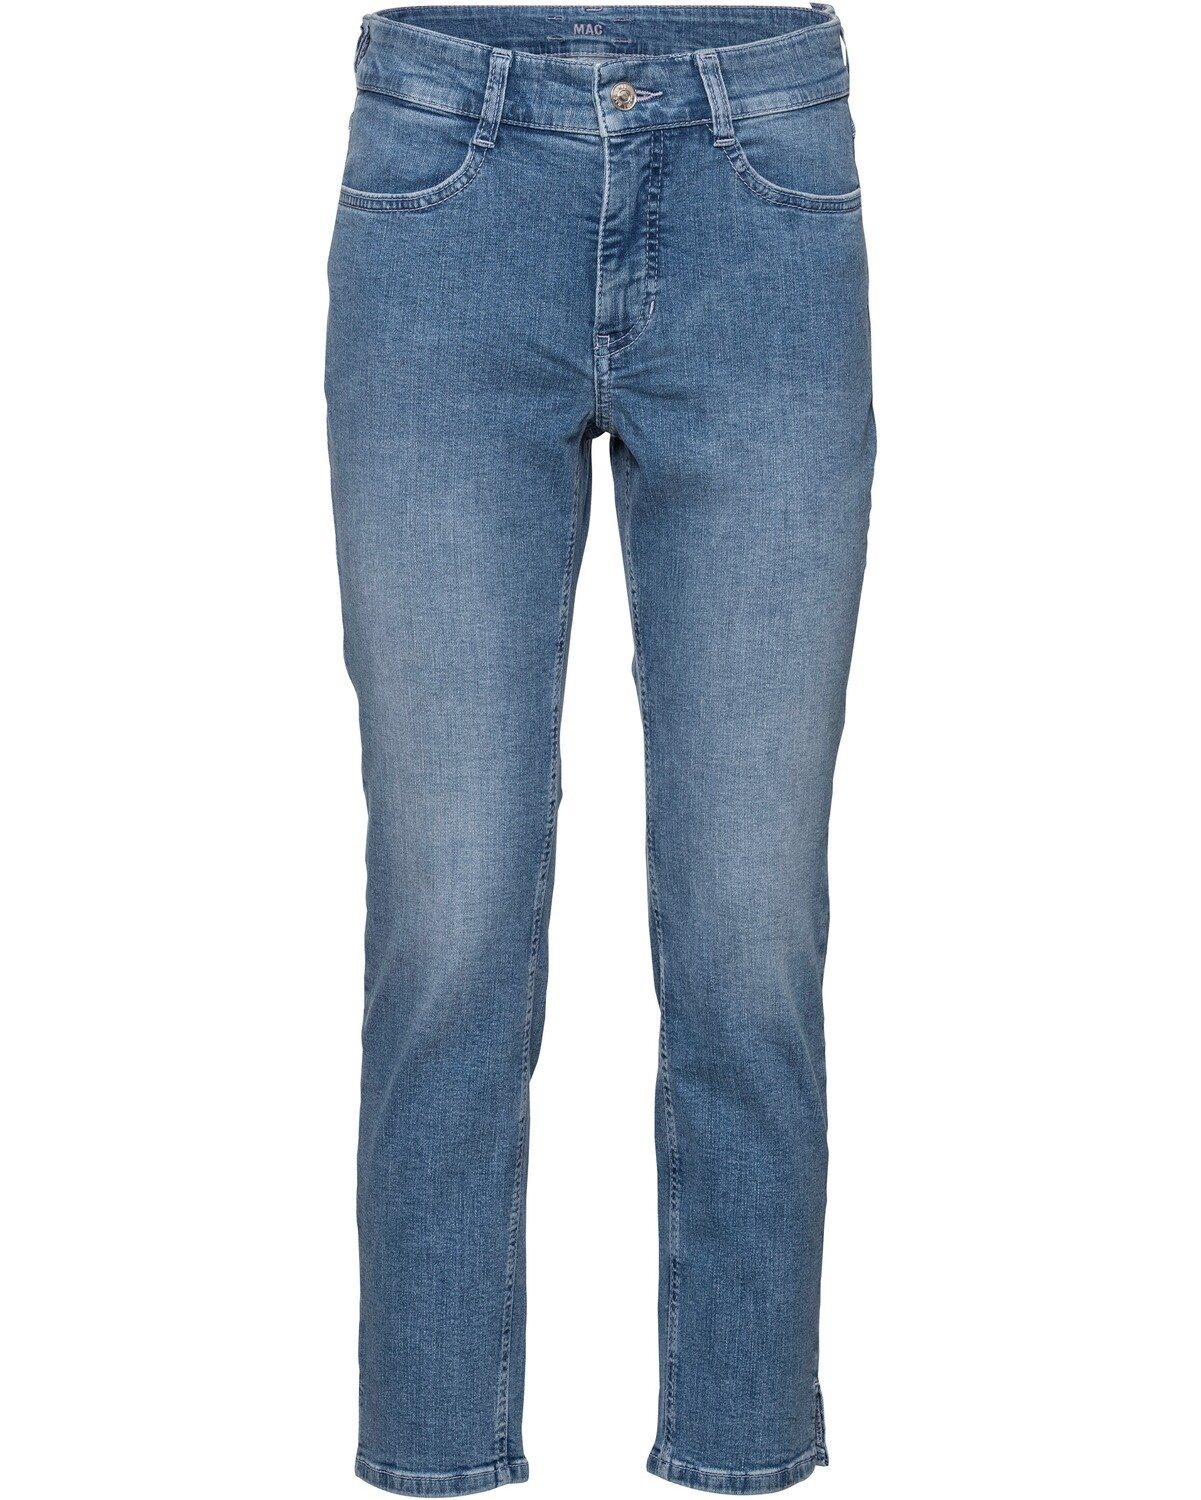 MAC 7/8-Jeans 7/8-Jeans Angela online kaufen | OTTO